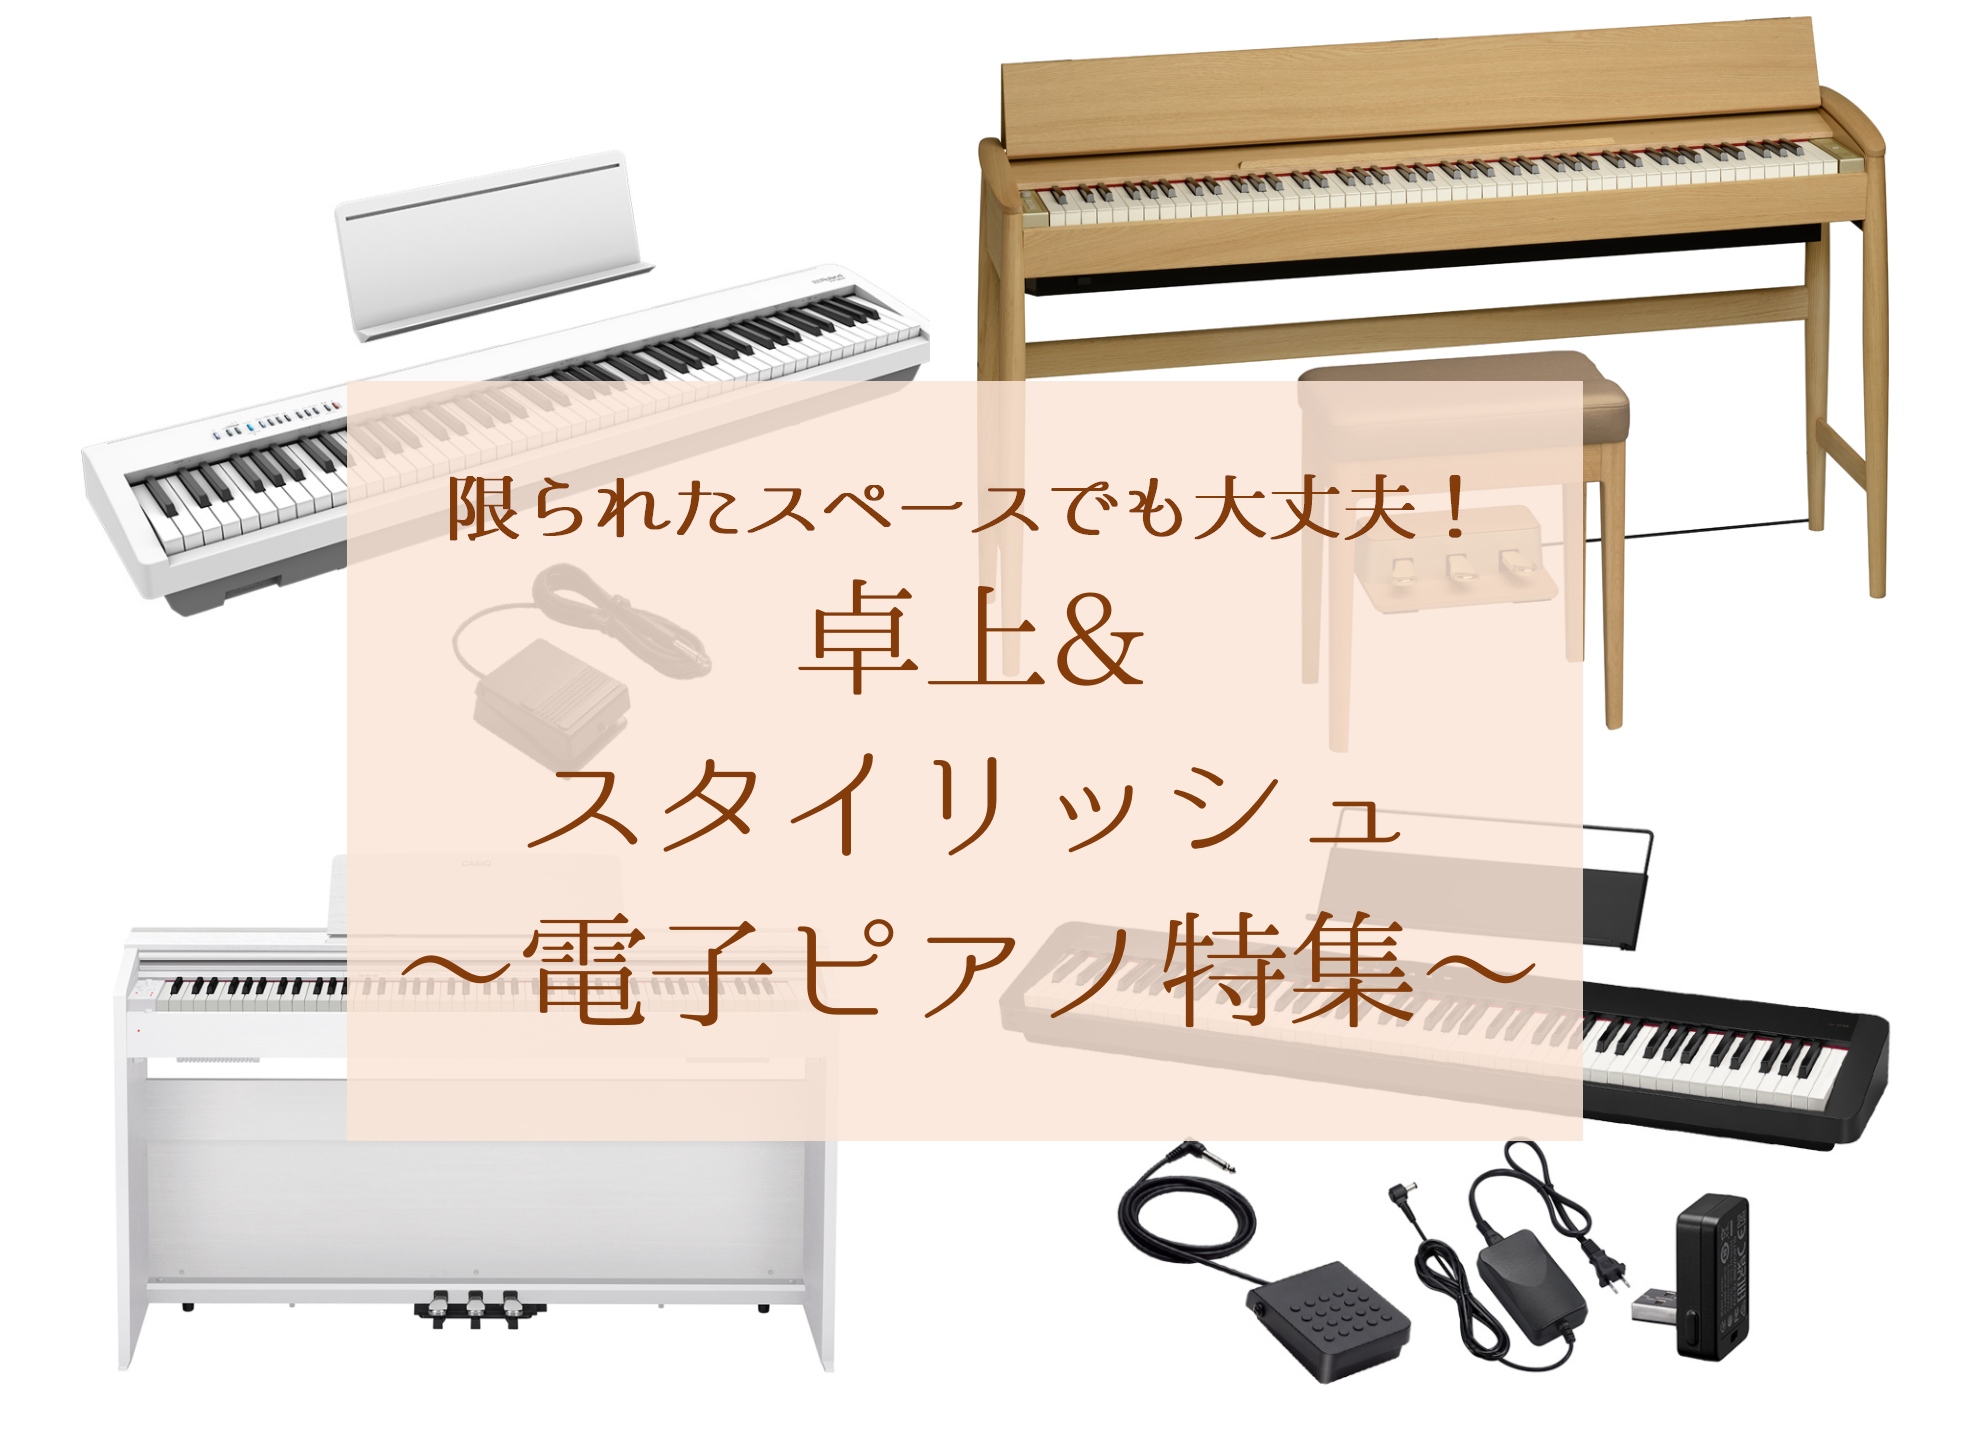 限られたスペースに電子ピアノを置きたい方必見！2023年秋現在で発売されている88鍵盤の電子ピアノをご紹介いたします。趣味向きの簡易的なものから、レッスン曲やクラッシック曲もしっかりと弾きこめる本格的な機種まで、オススメの電子ピアノを網羅しておりますので、ぜひ参考にしてみてください♪ CONTENT […]